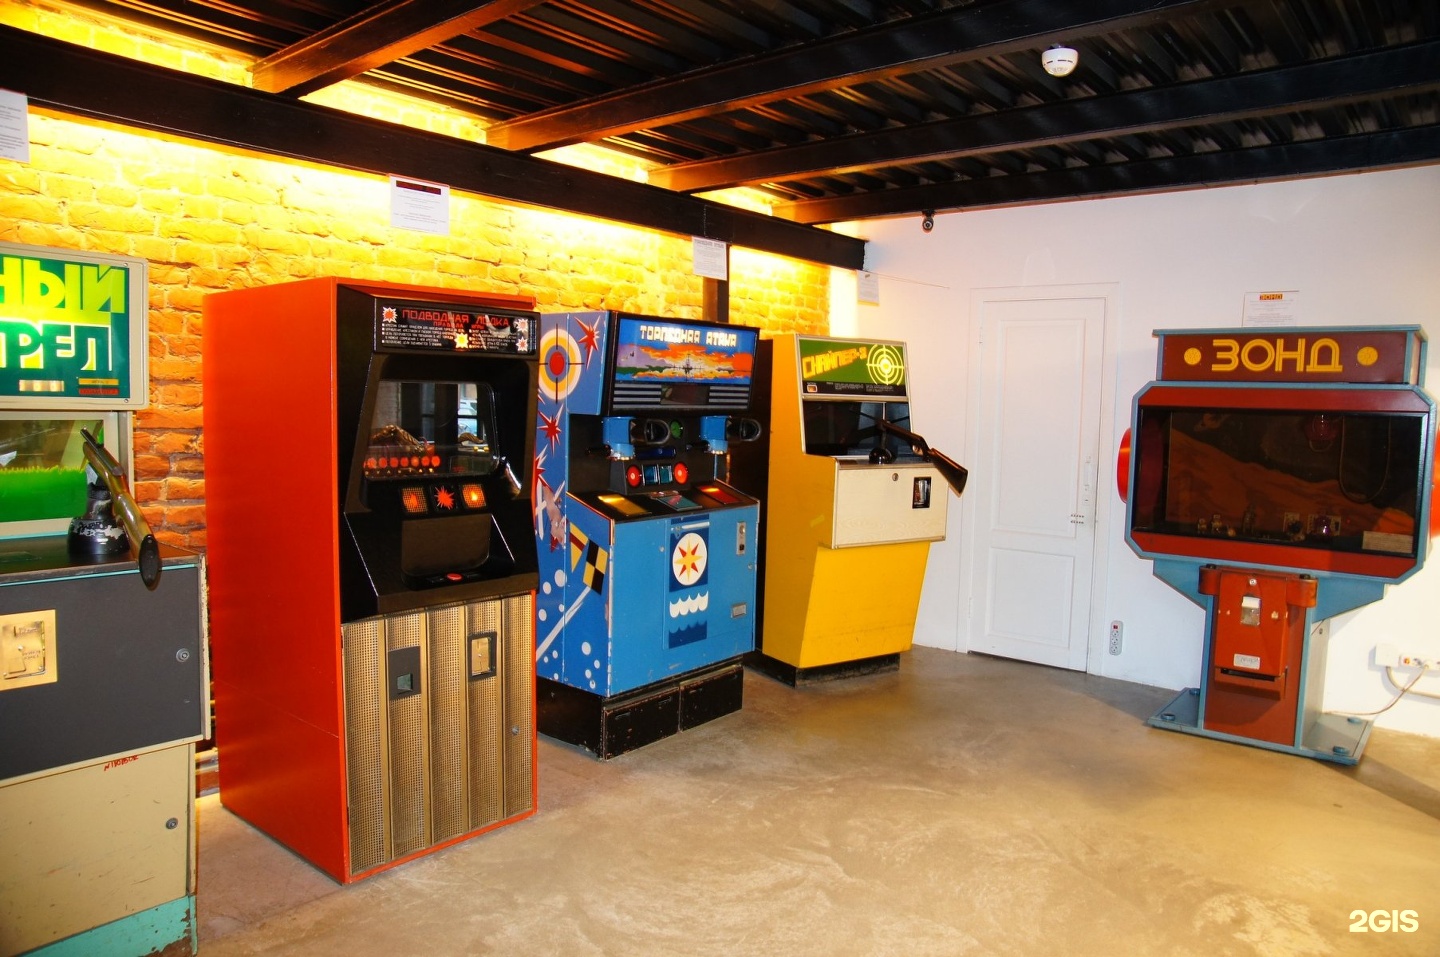 Игровые автоматы в спб адреса 2014 центры с игровыми автоматами для детей в москве